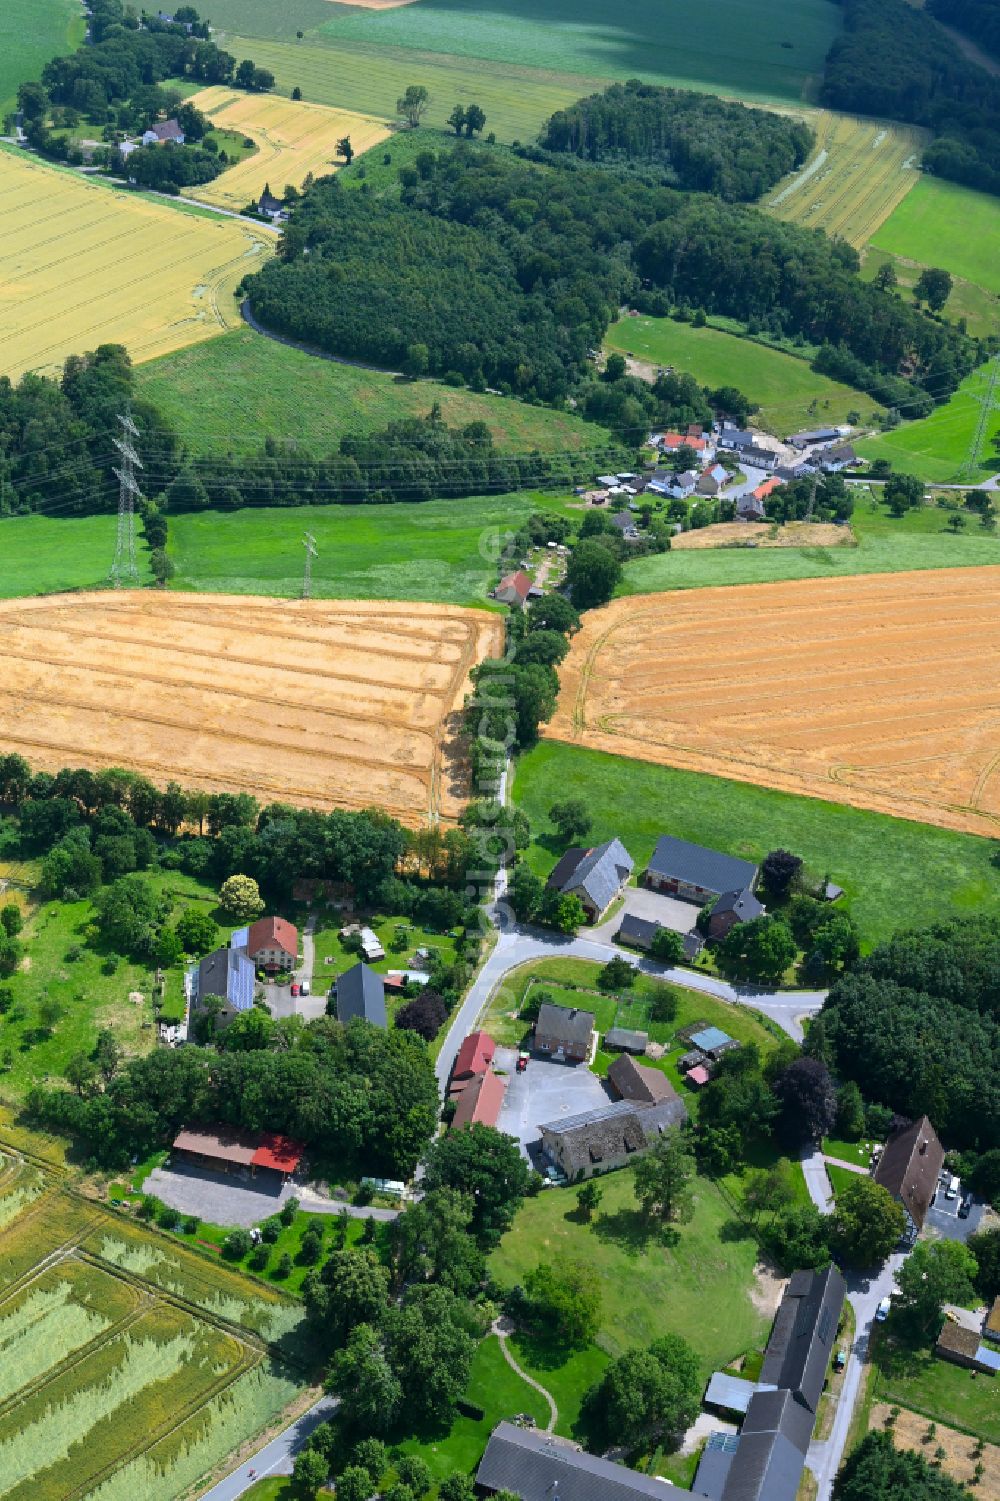 Luftbild Gerlingen - Dorfkern am Feldrand in Gerlingen im Bundesland Nordrhein-Westfalen, Deutschland